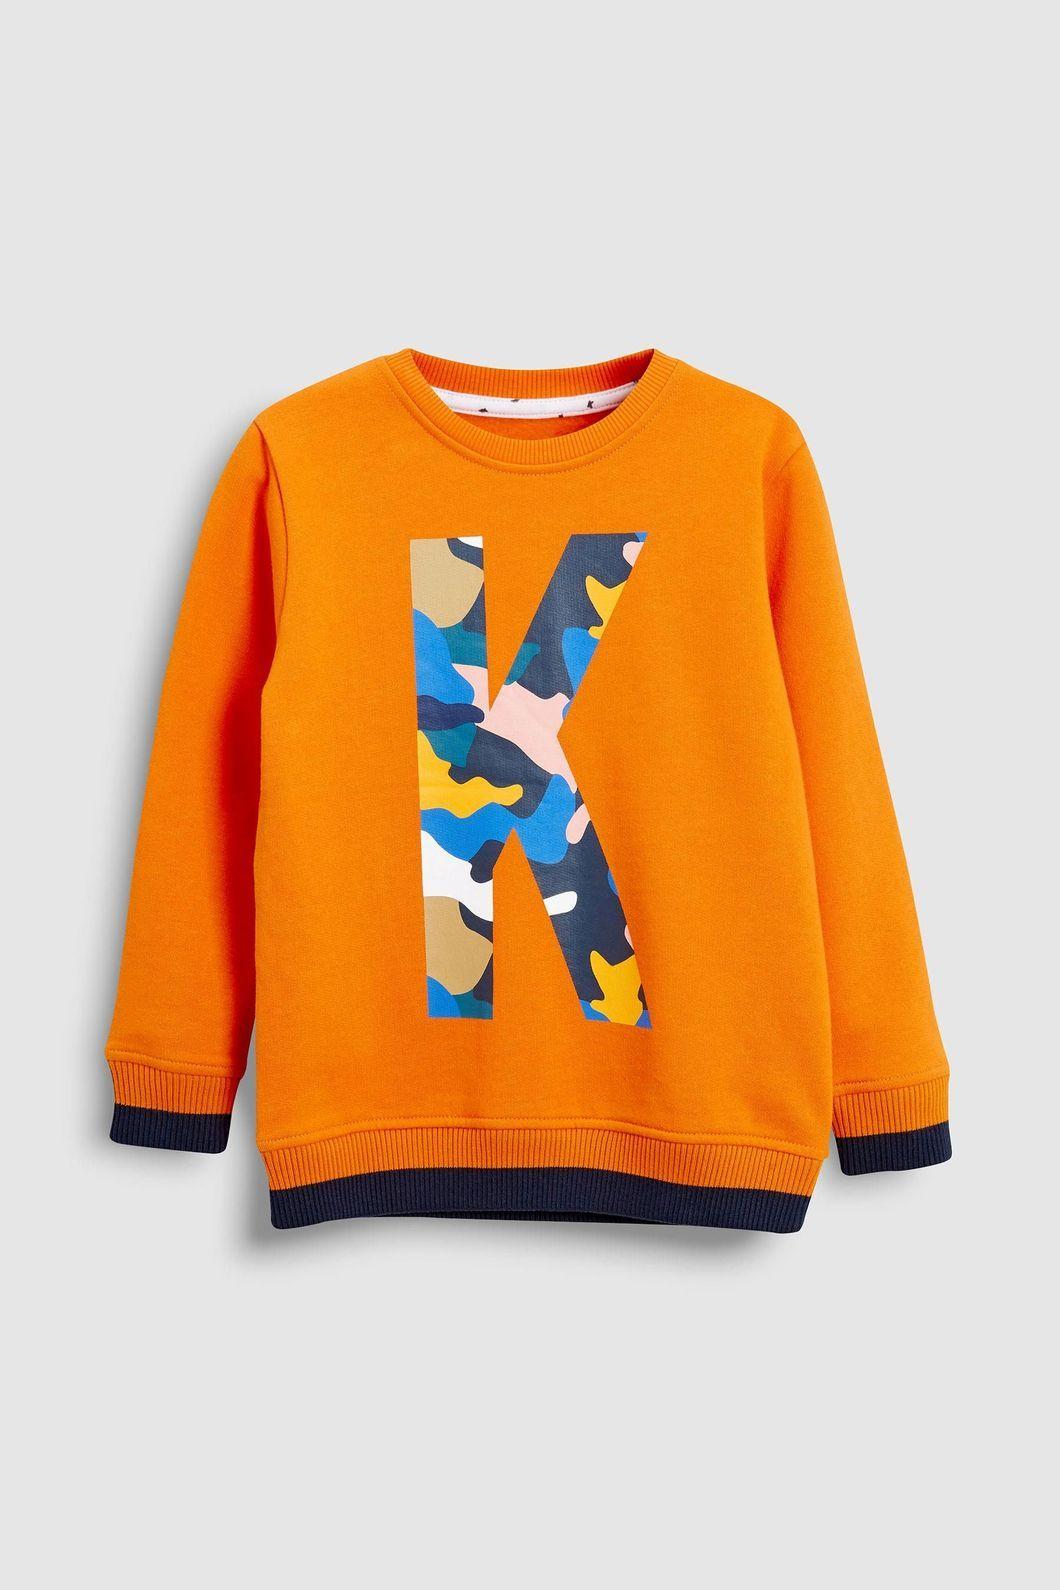 Orange Clothing Logo - Kimba Kids by Kimberley Walsh Orange K Logo Sweatshirt – Kimba Clothing